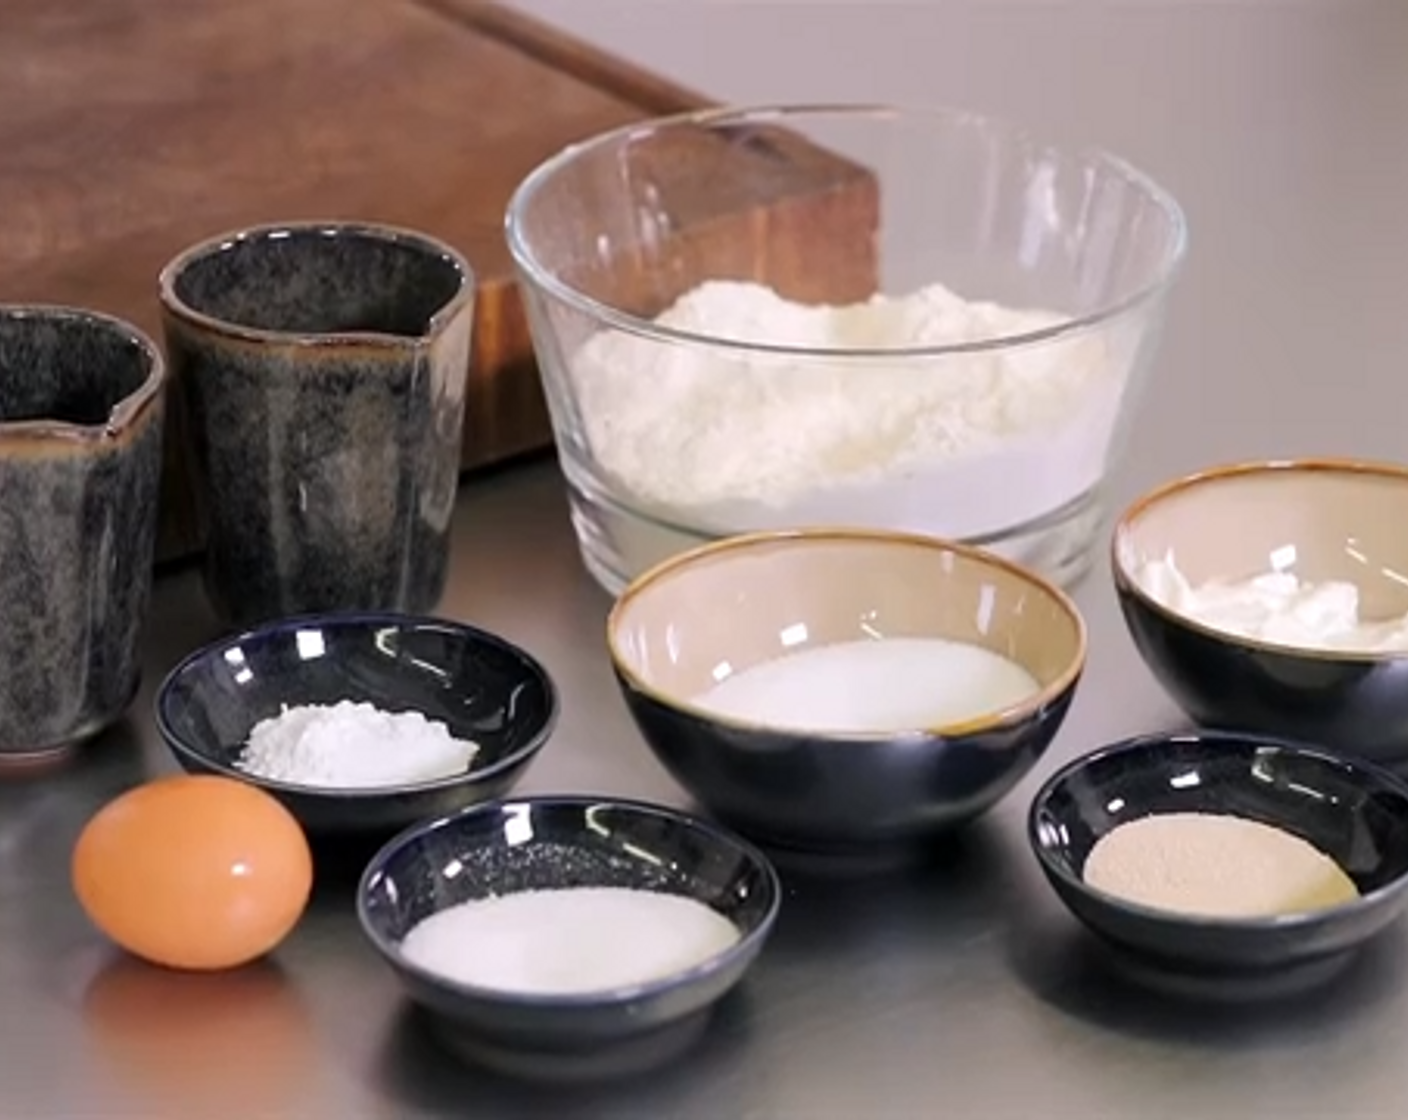 Schritt 1 In einer Schüssel, Mehl (500 g), Salz (2 Teelöffel), Trockenhefe (2 Teelöffel), Backpulver (1 TL), Milch (150 ml), Joghurt (150 g), Ei (1) und Öl (4 Teelöffel)] zu einem geschmeidigen Teig kneten. Den Teig für mindestens 1 Stunde auf das doppelte Volumen aufgehen lassen.